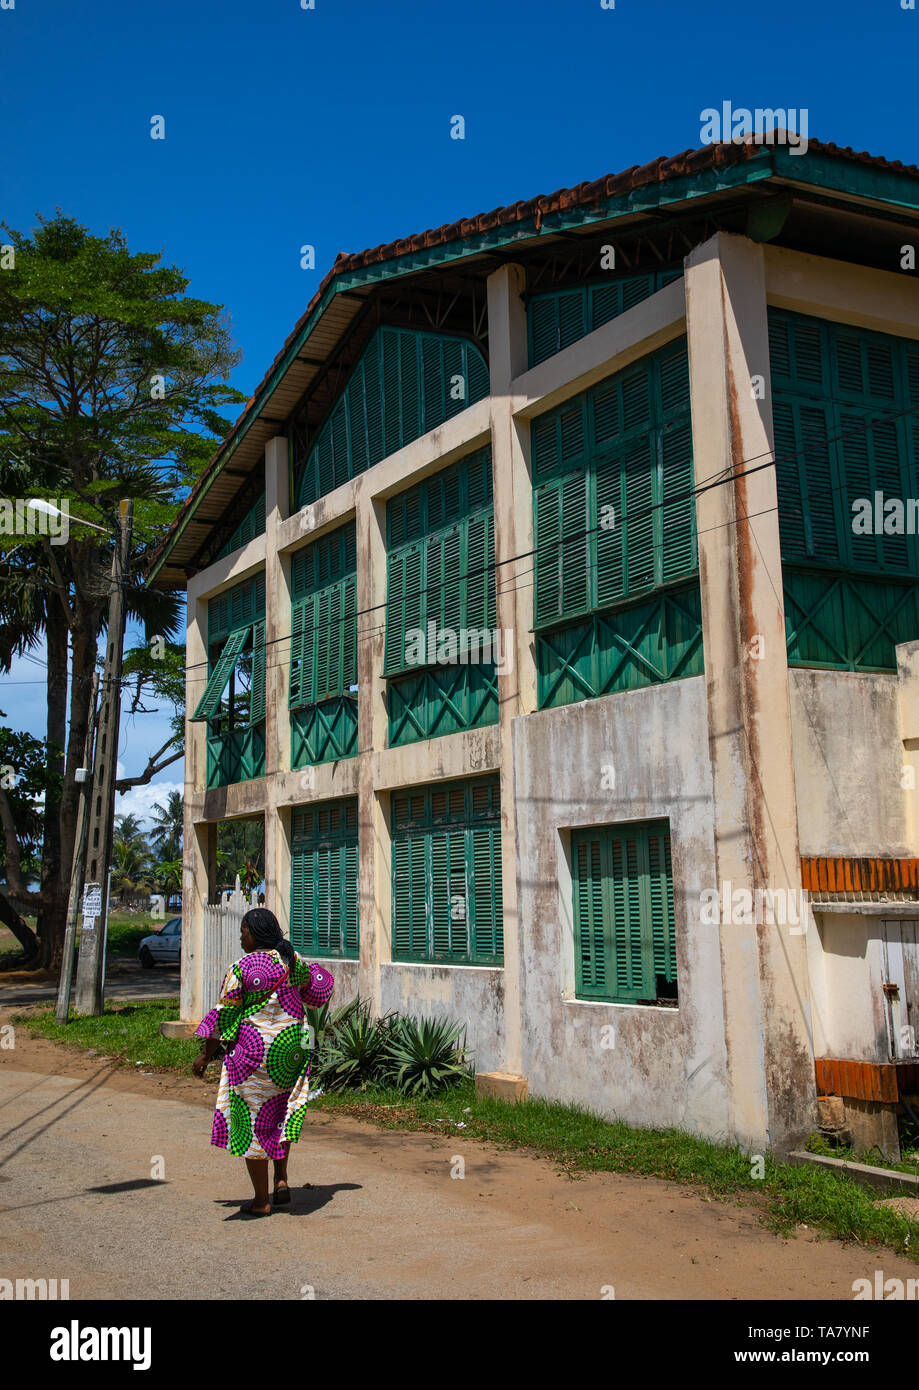 Ancien bâtiment colonial français anciennement la maison des douanes dans le domaine du patrimoine mondial de l'UNESCO, Sud-Comoé, Grand-Bassam, Côte d'Ivoire Banque D'Images